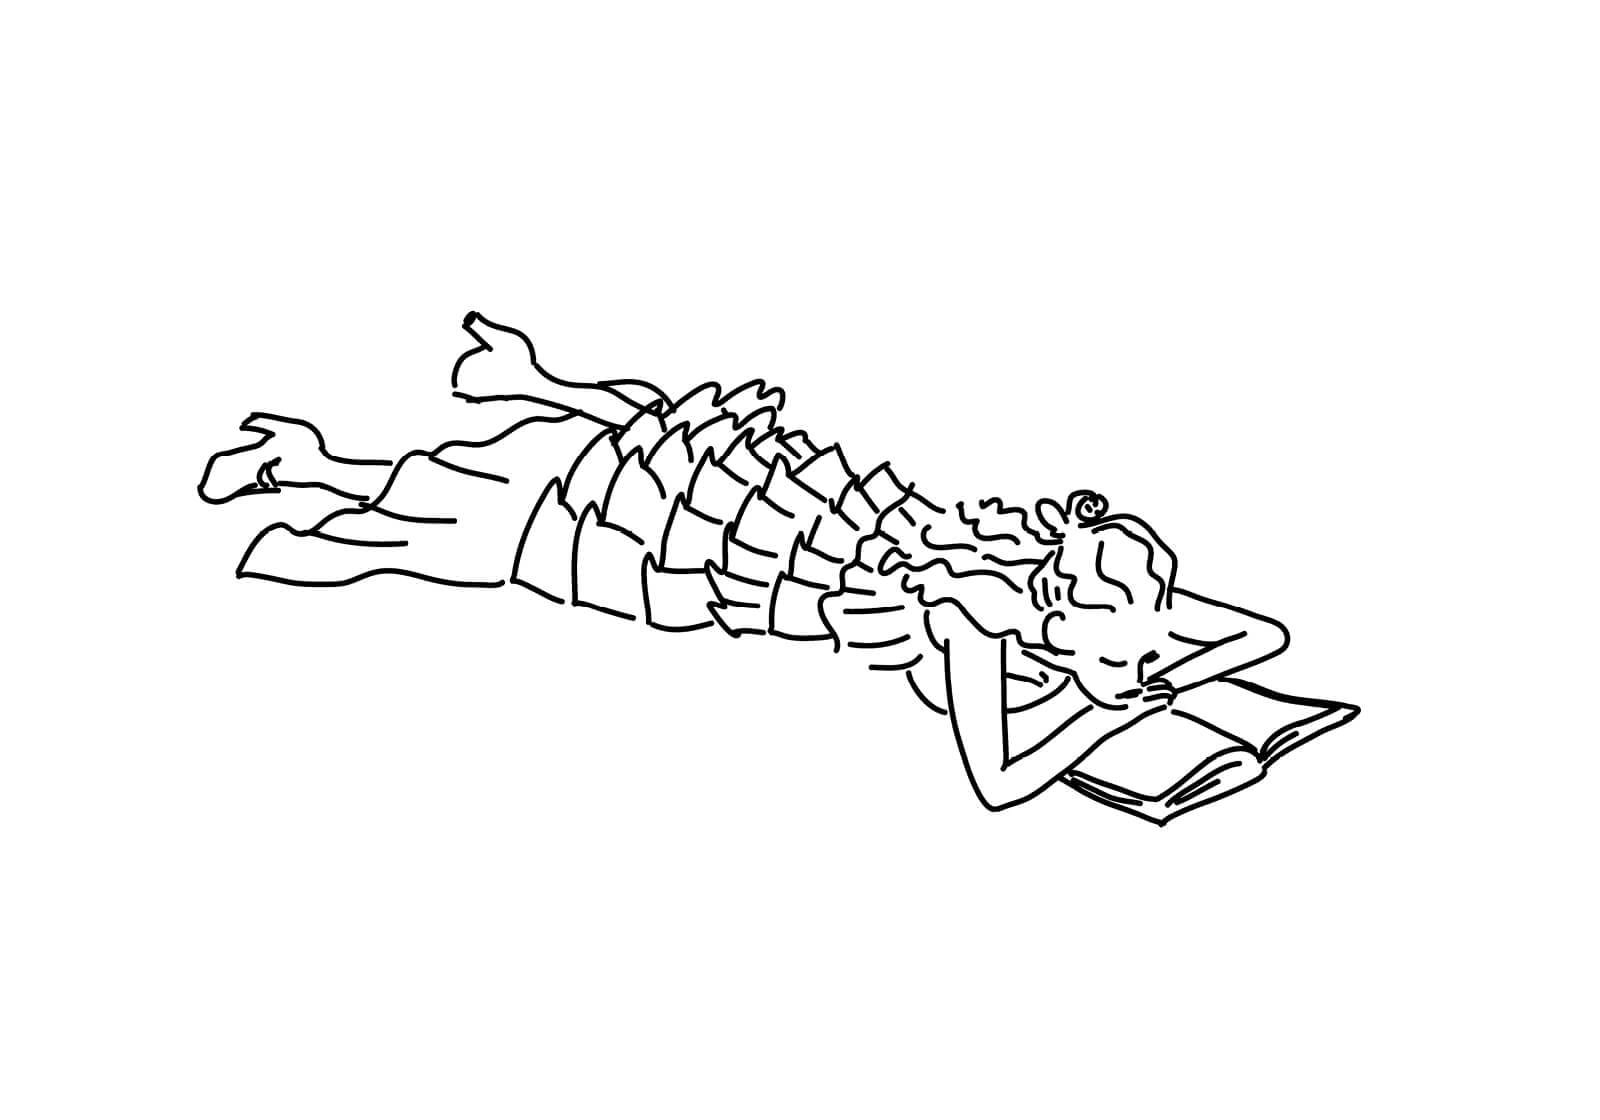 calme, nature et volupté, illustration d'une lectrice du dimanche pour le chalet des iles signé ichetkar